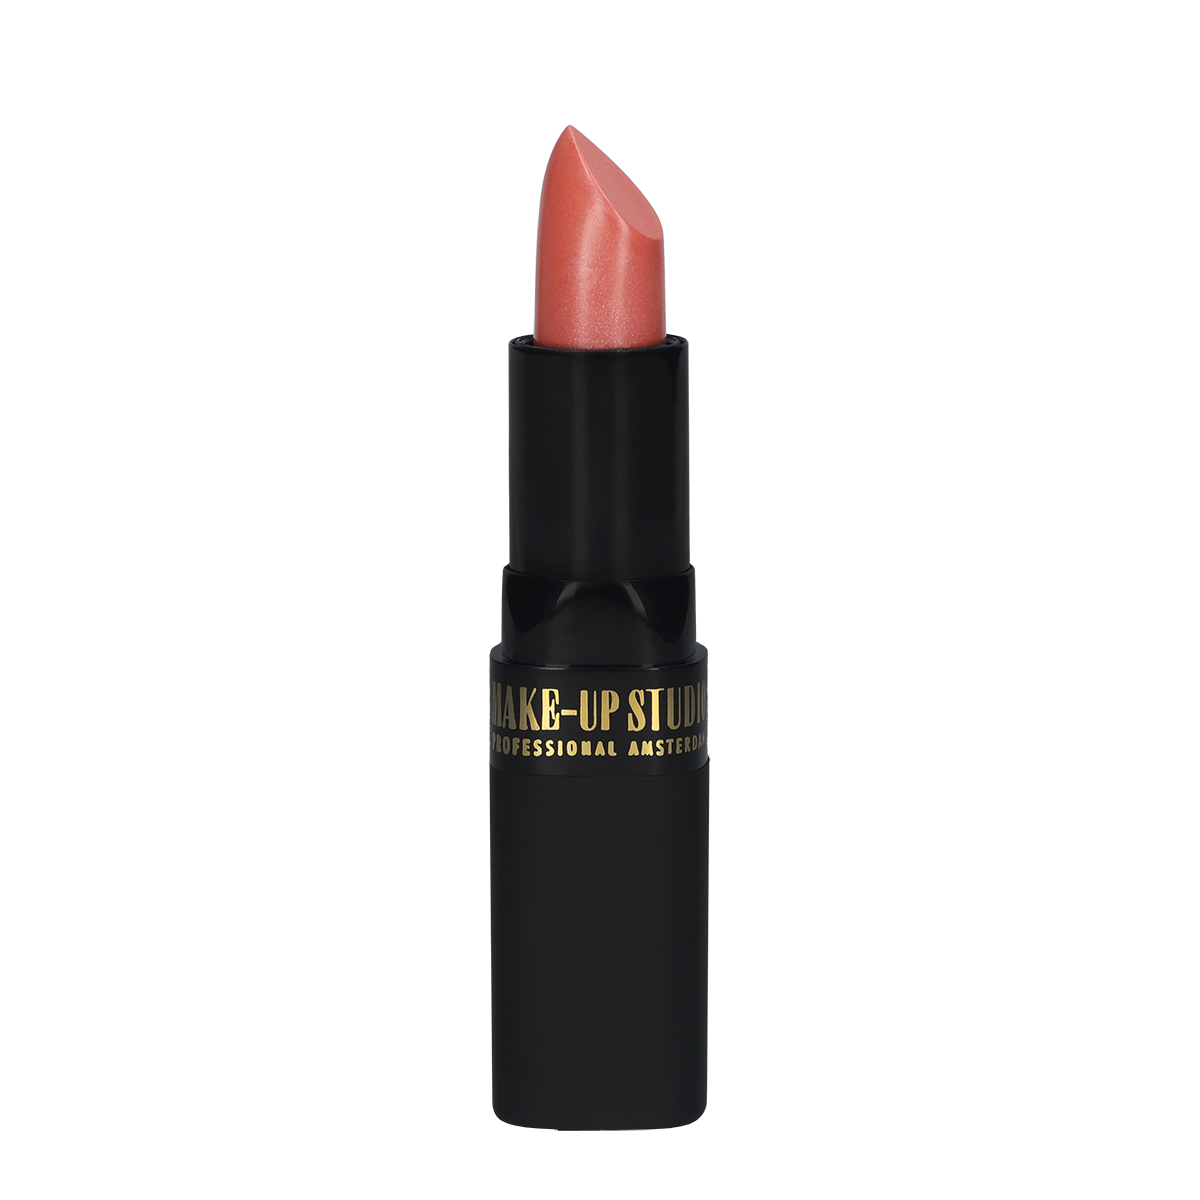 Make-up Studio Lipstick Lippenstift - 51